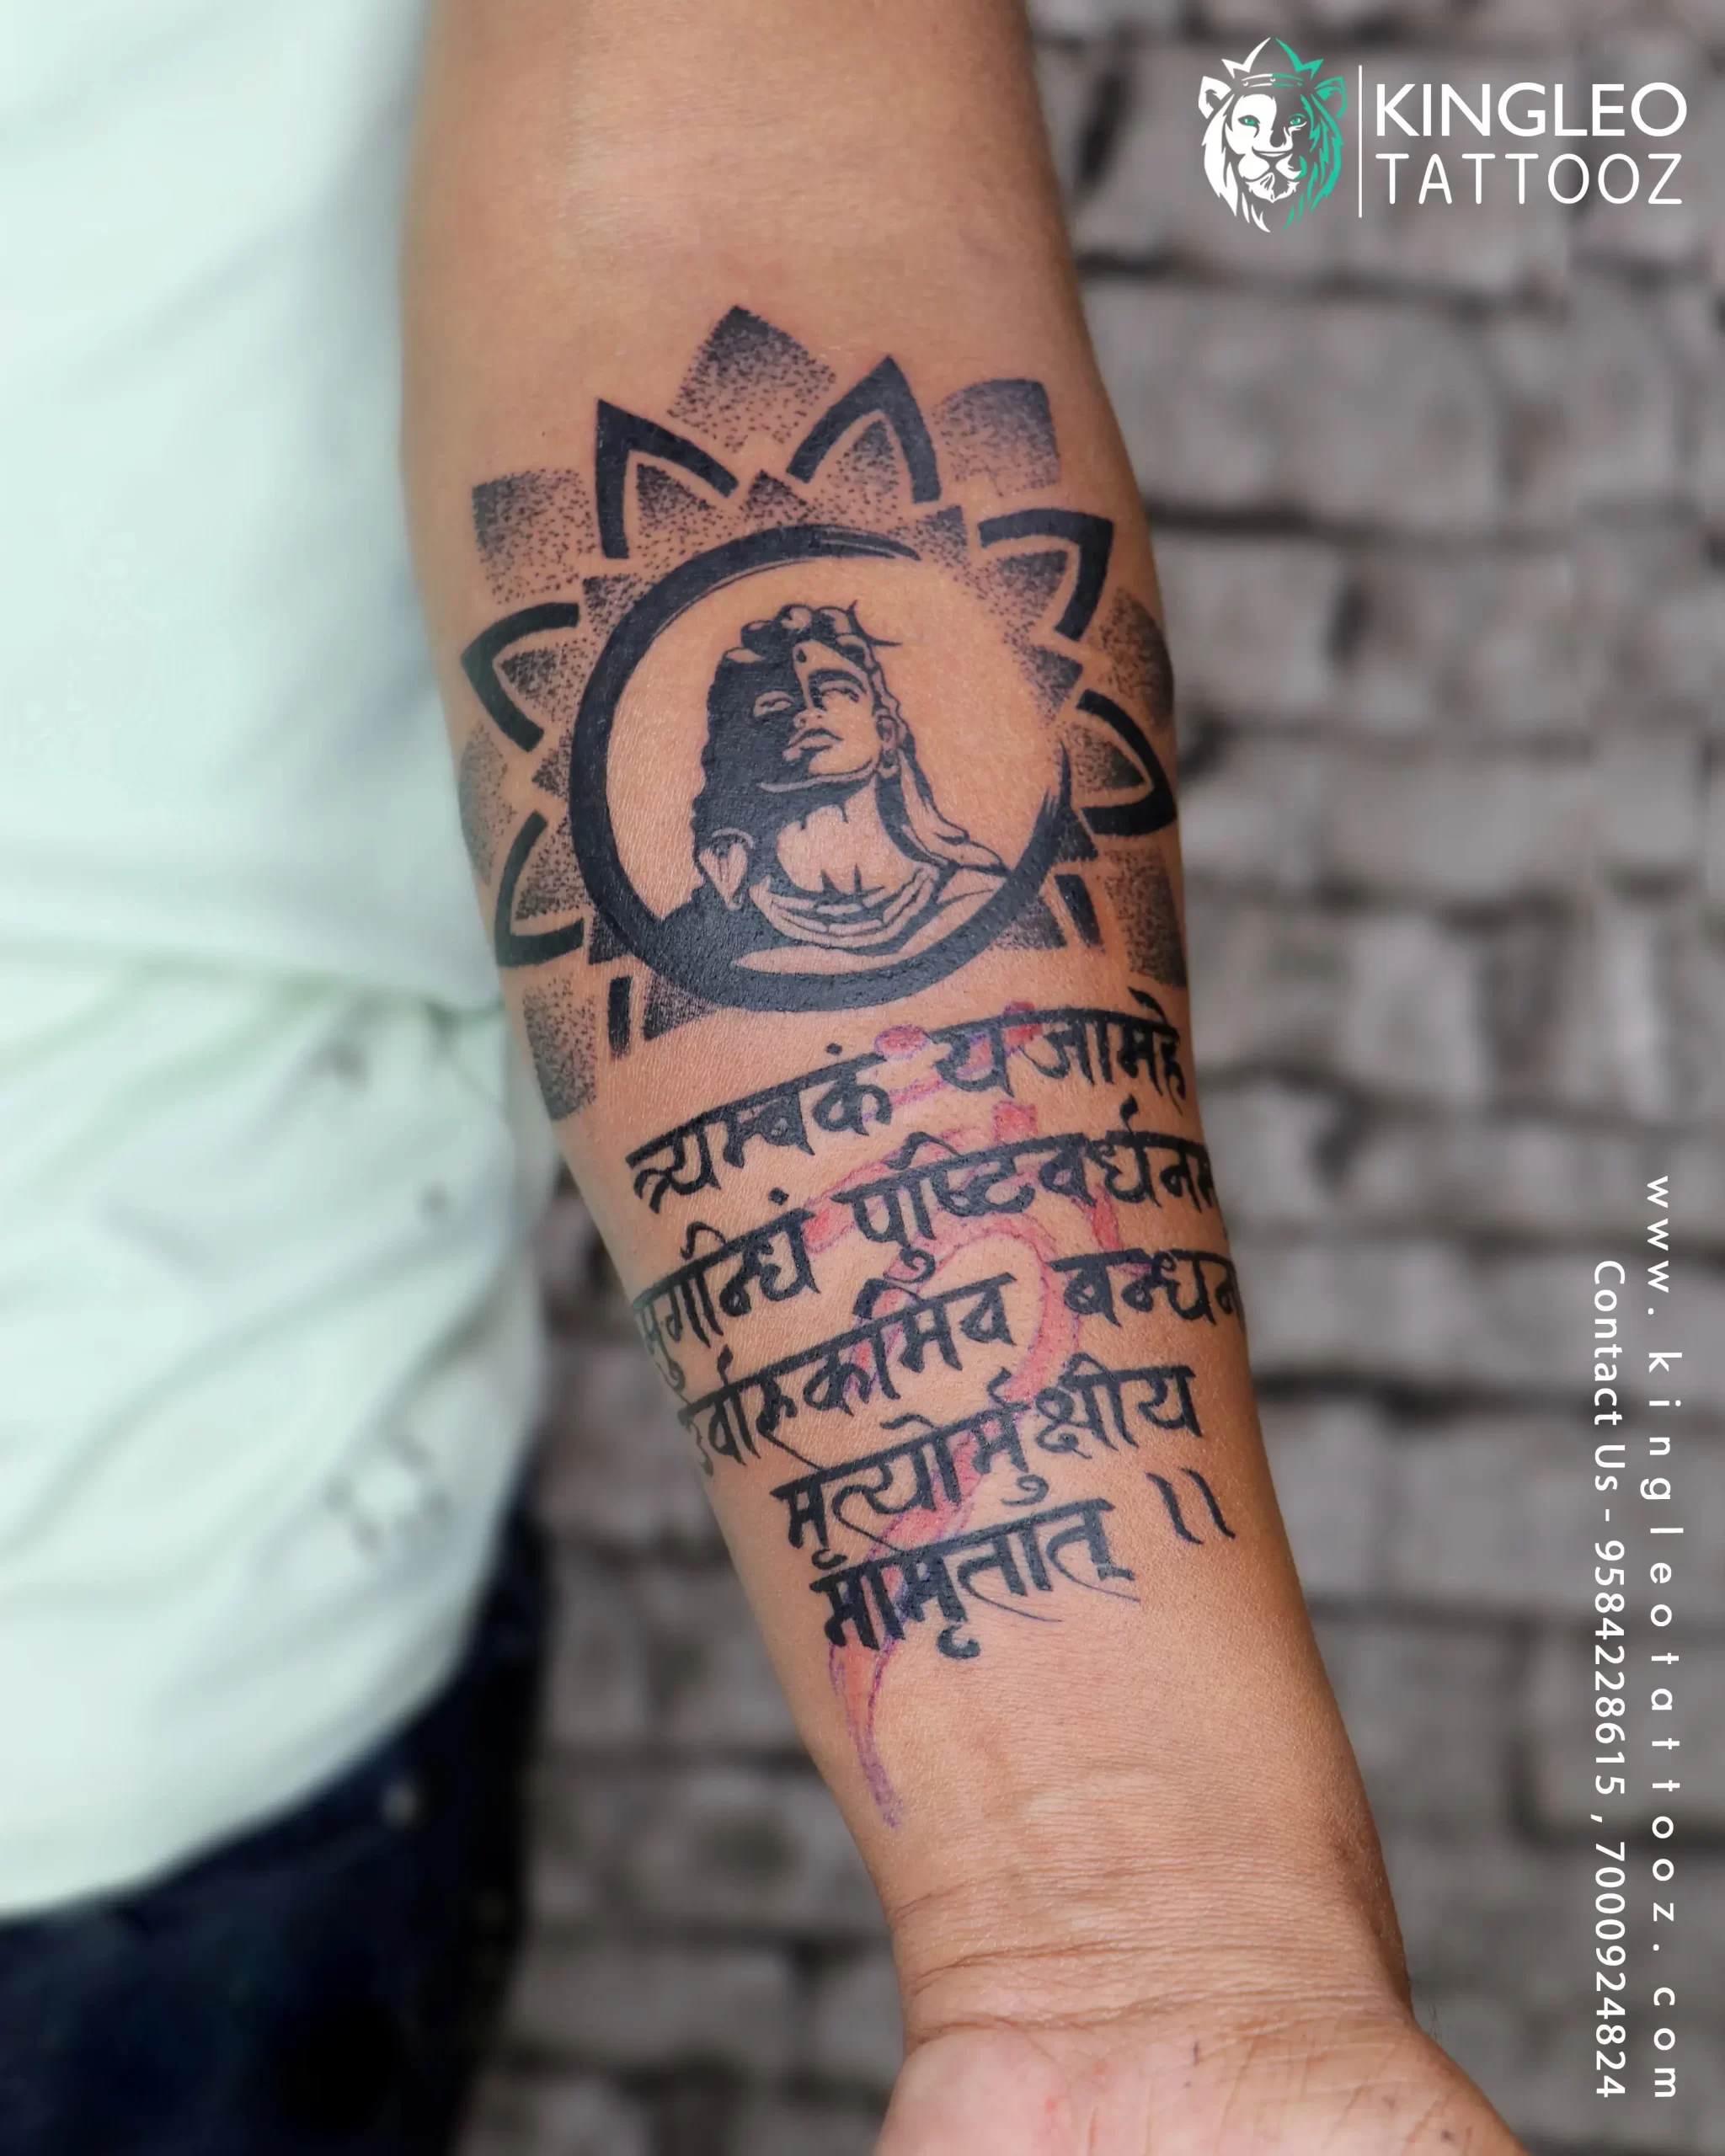 सावन में महिलाओं के बीच 'महादेव' के टैटू का ट्रेंड, त्रिशूल-डमरू और मंत्र  की भी है खूब डिमांड - sawan 2022 mahadev shiv trishul damru and mantra  tattoos are in trend among